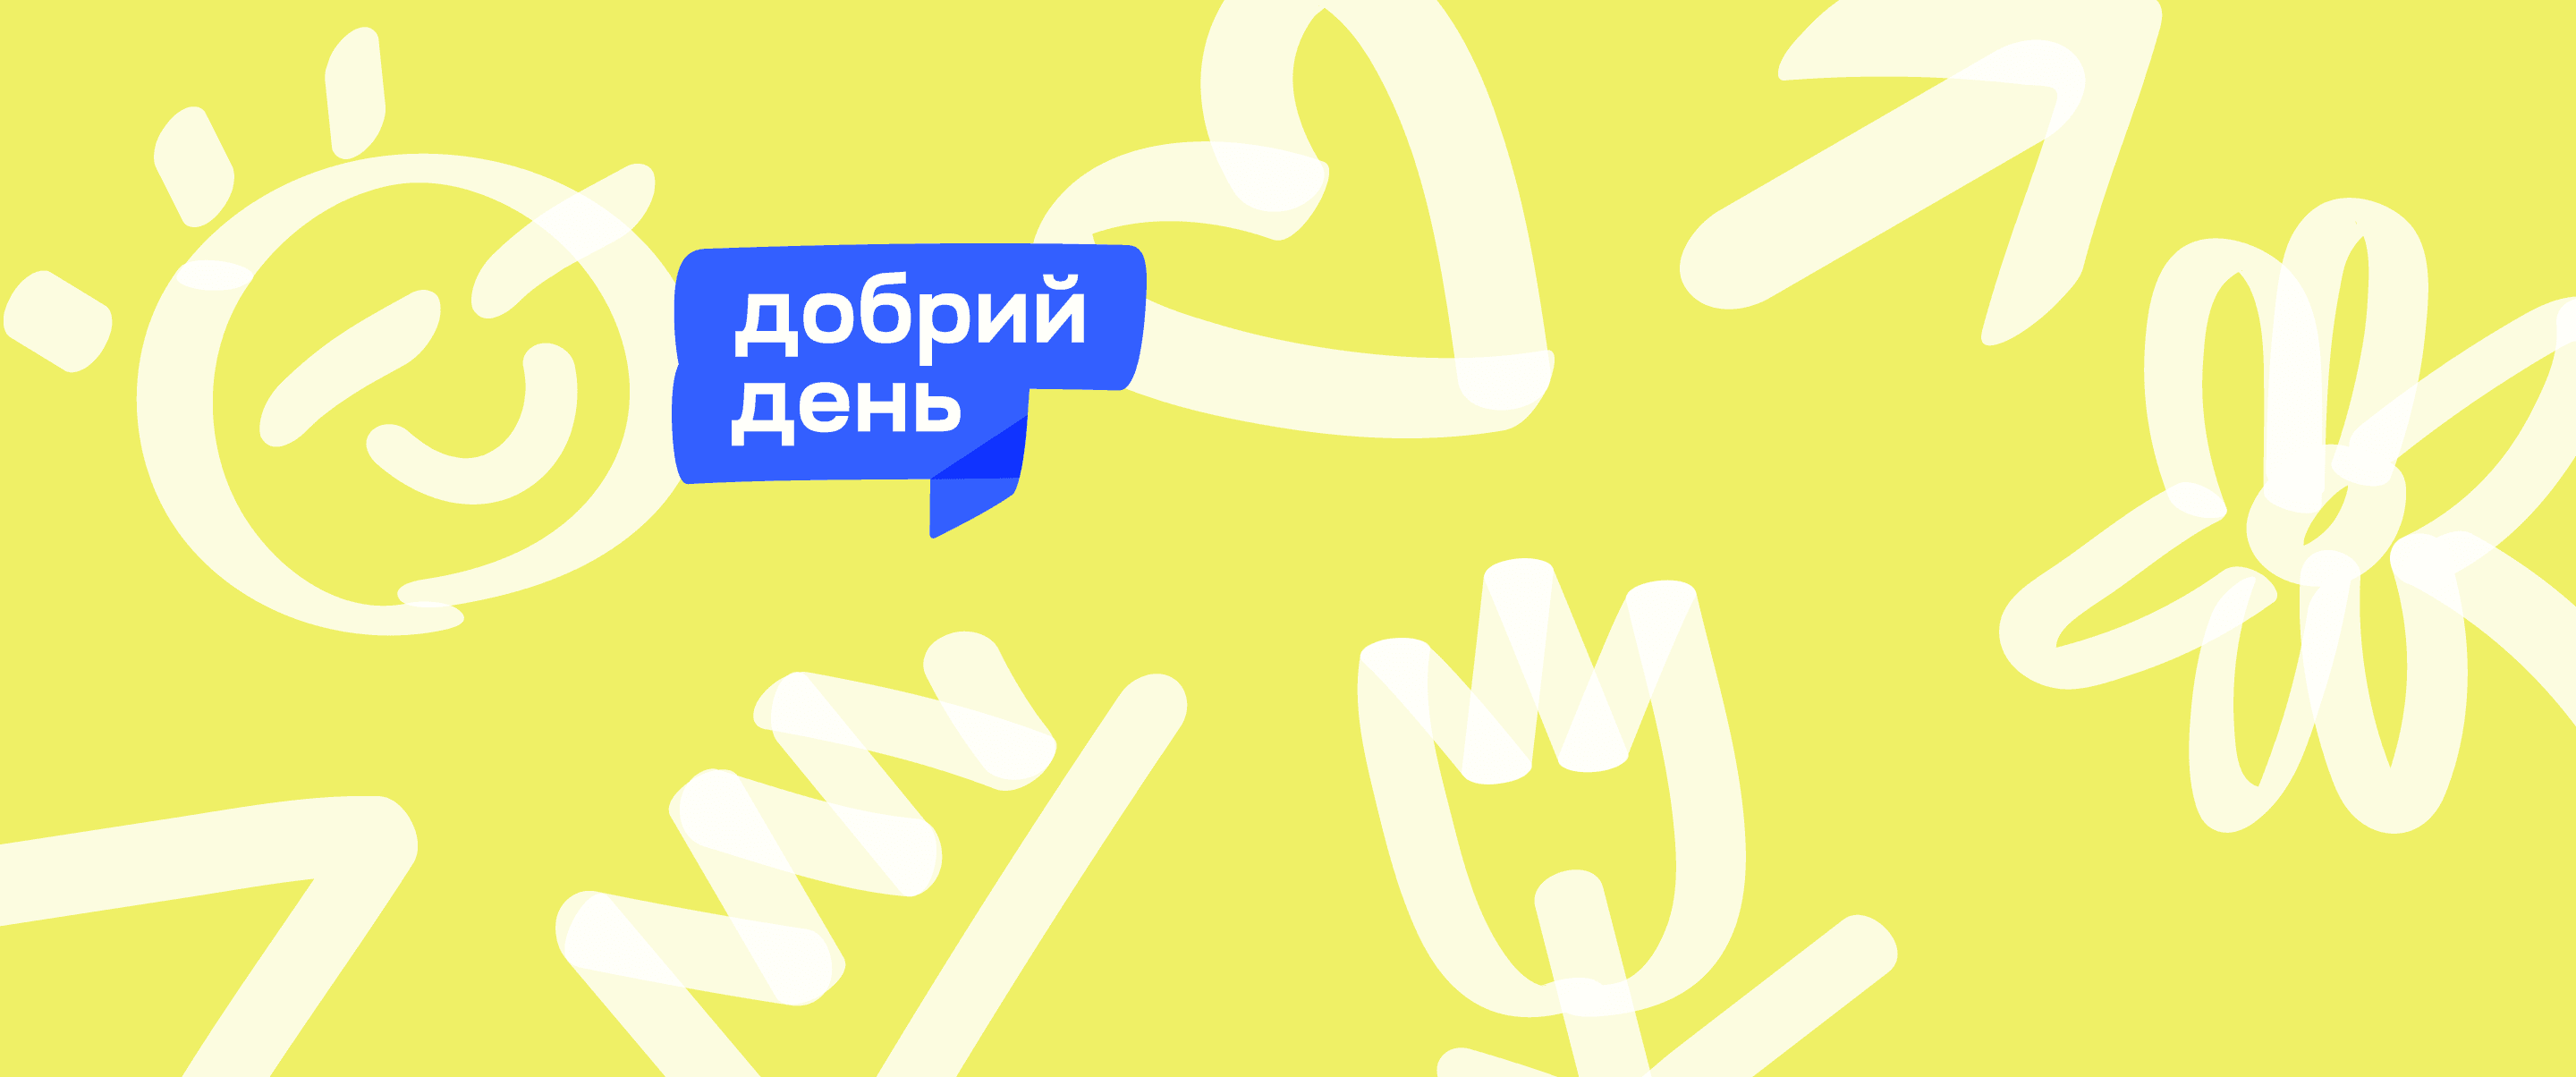 Future for Ukraine запустила ініціативу “Добрий день"